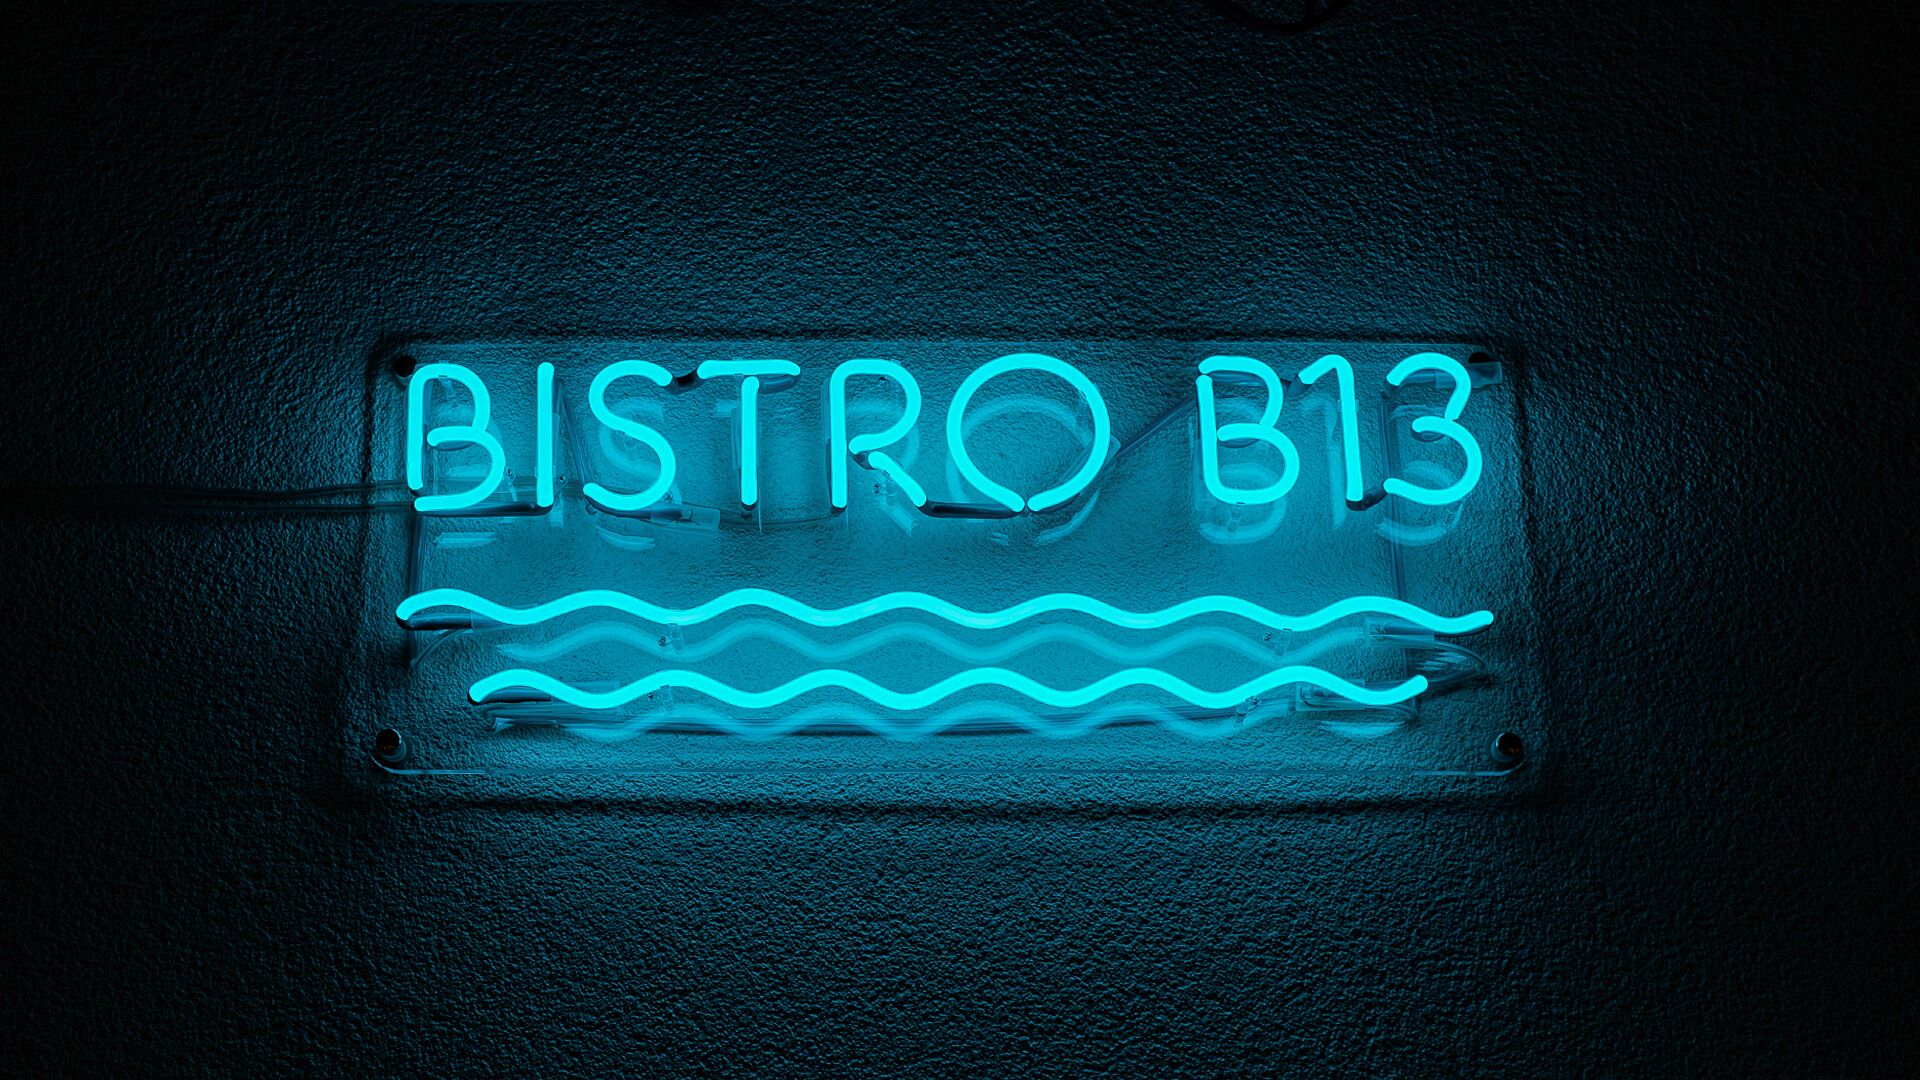 Bistro B13 - Bistroblauw neonbord, met golven onder de letters.